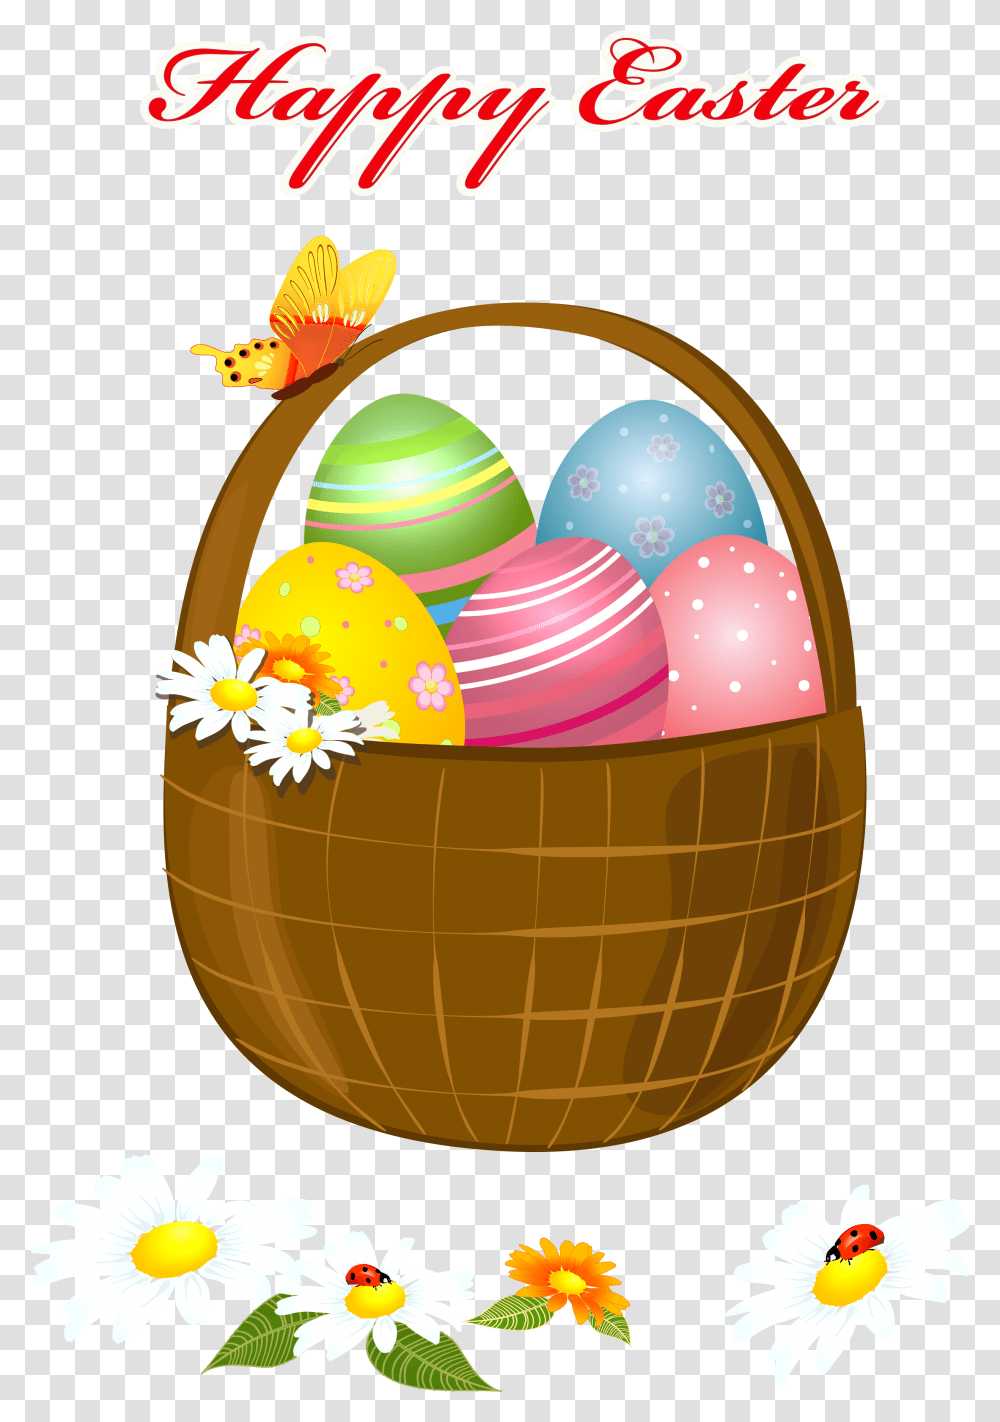 Happy Easter Banner Happy Easter Basket Clipart, Food, Egg, Balloon, Easter Egg Transparent Png